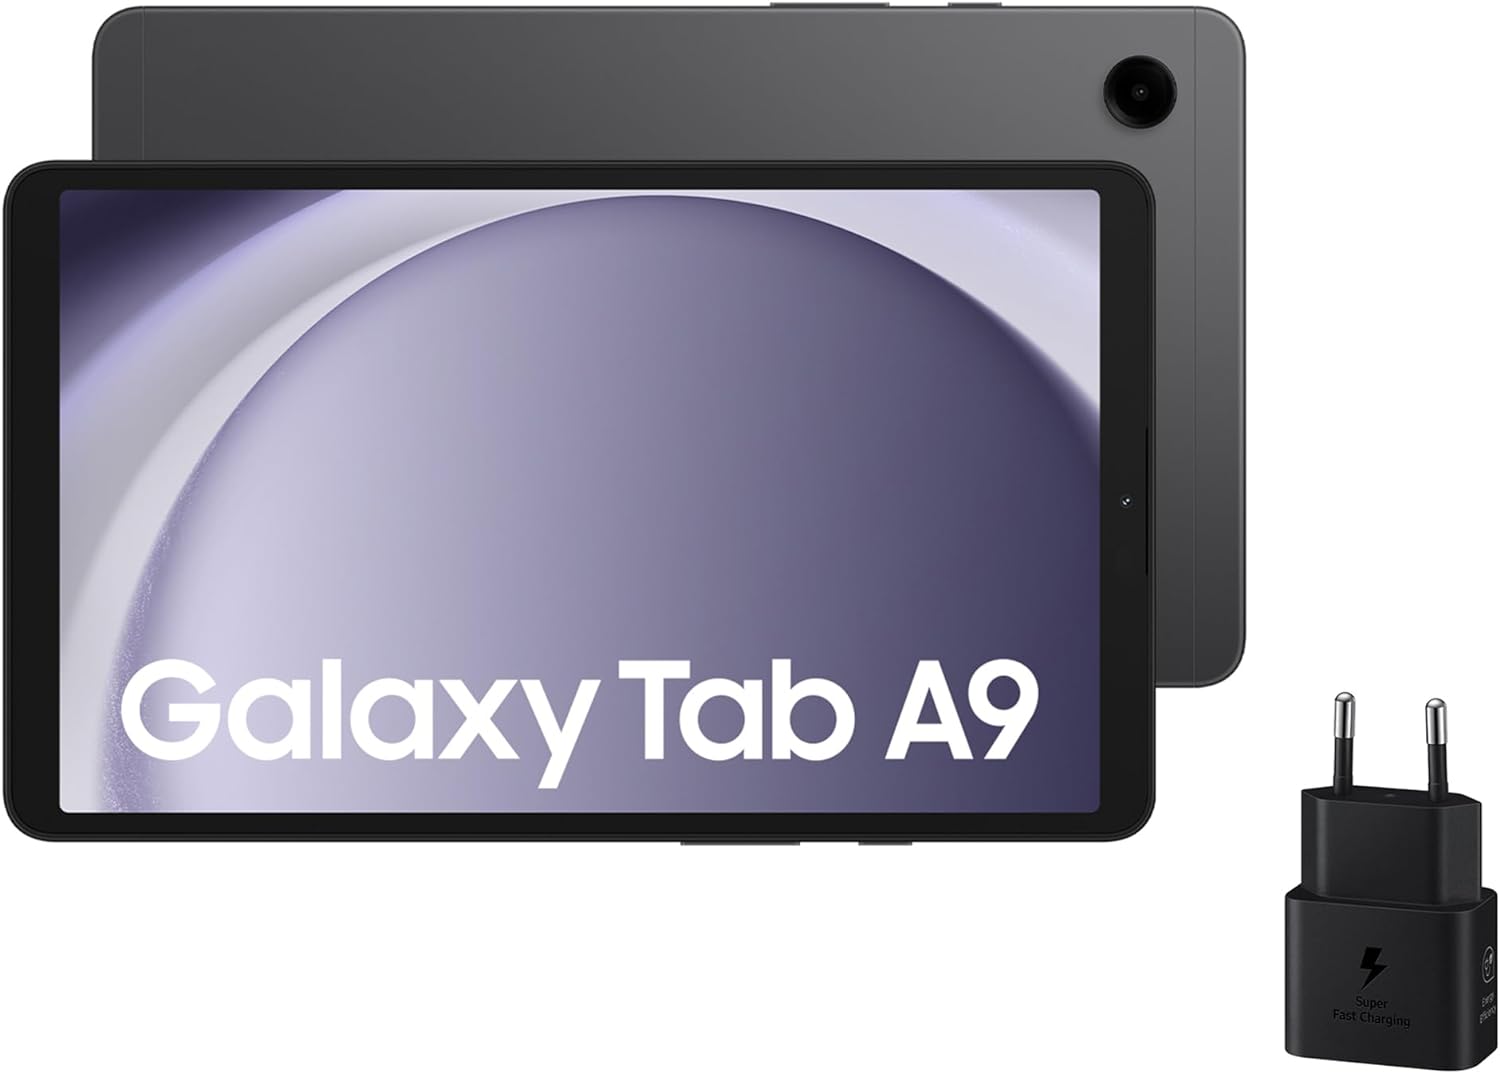 Samsung Galaxy Tab A9 vs A8